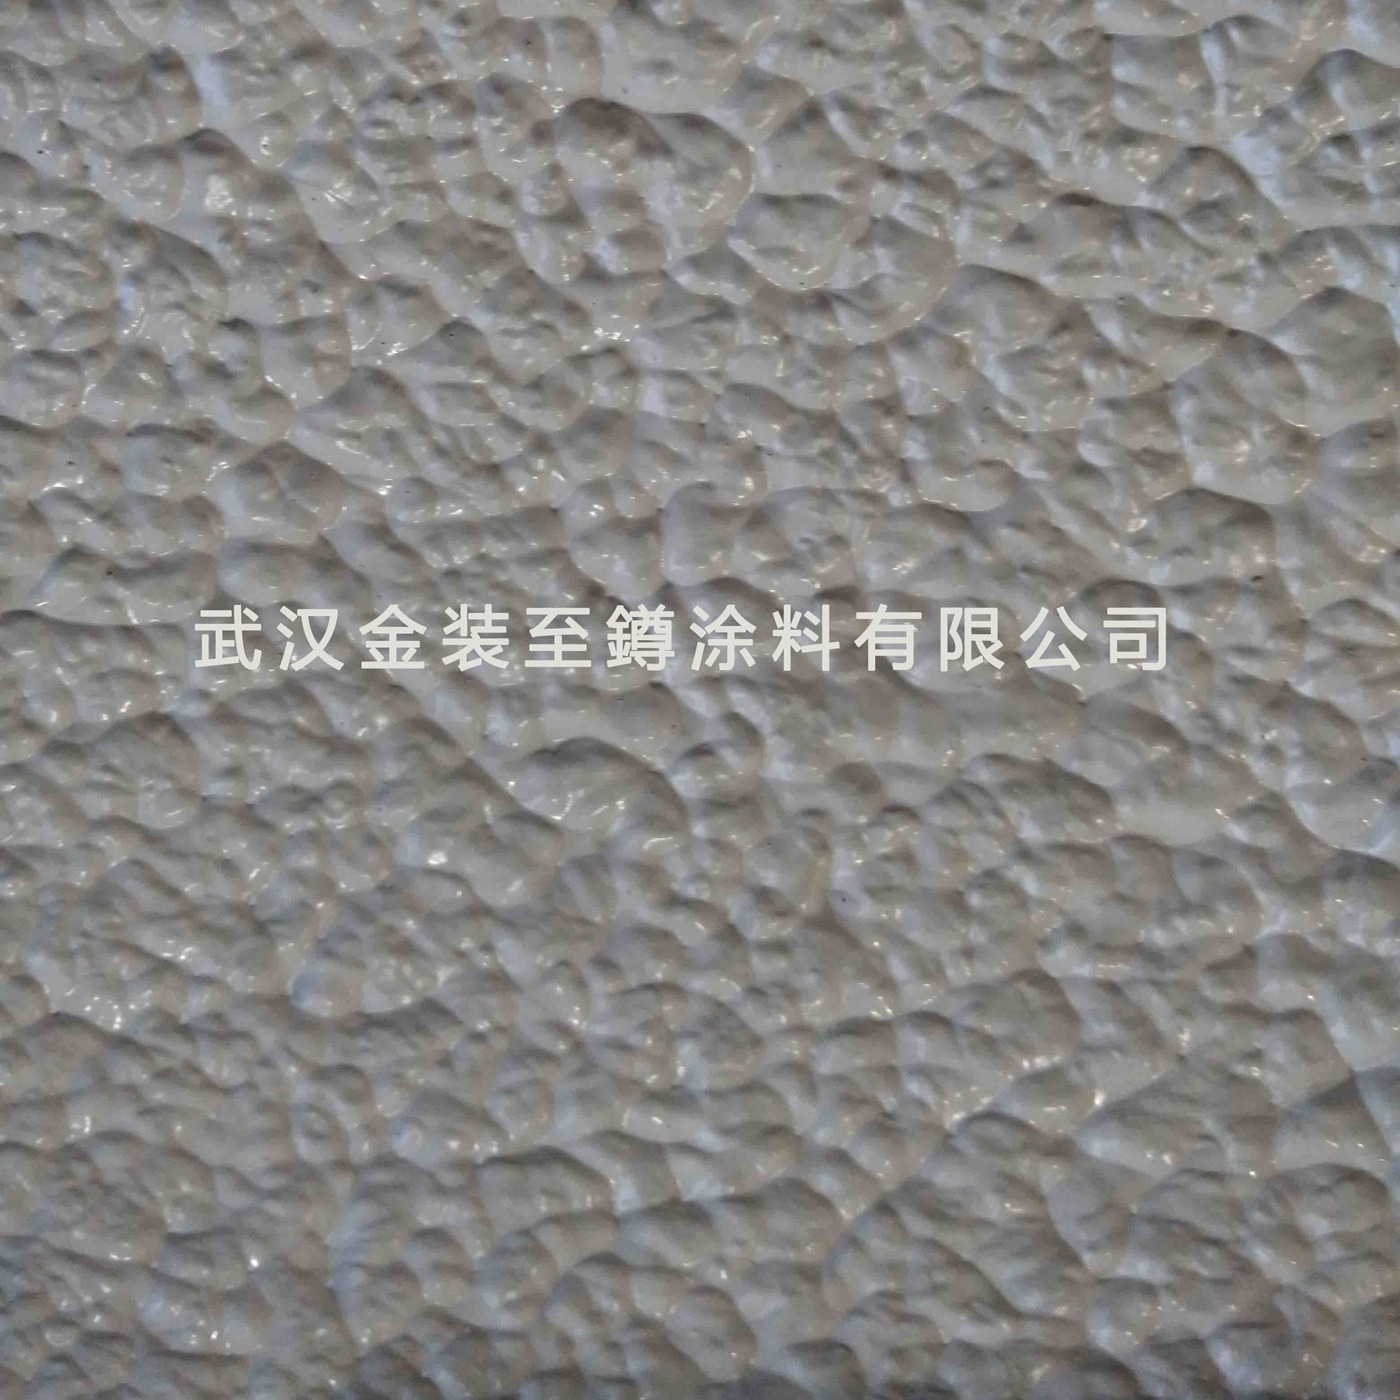 湖北武汉 厂家供应 各种颜色 高弹拉毛漆 拉毛骨浆 骨浆肌理漆图片